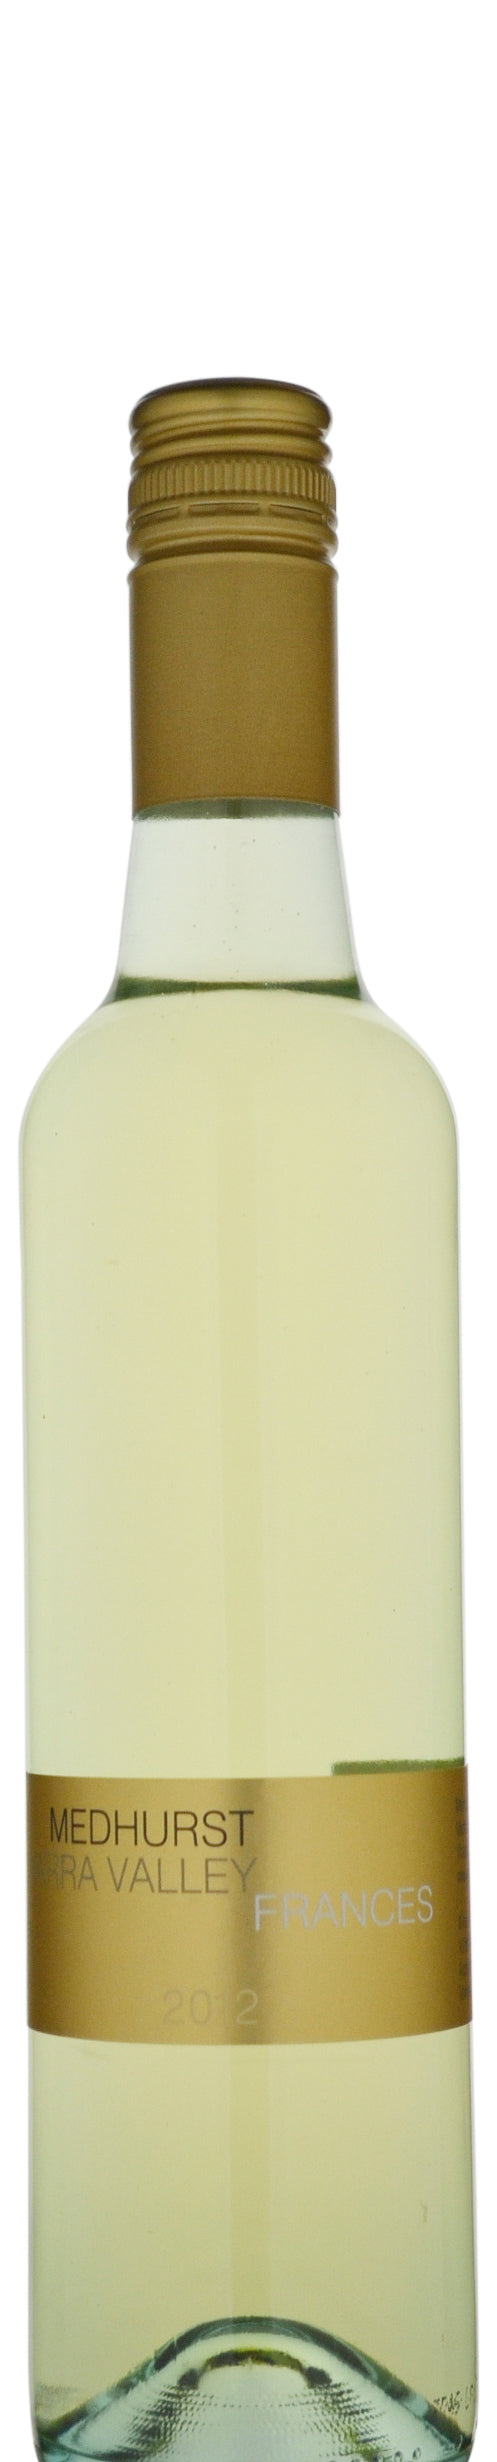 Medhurst Wines Frances White 2012